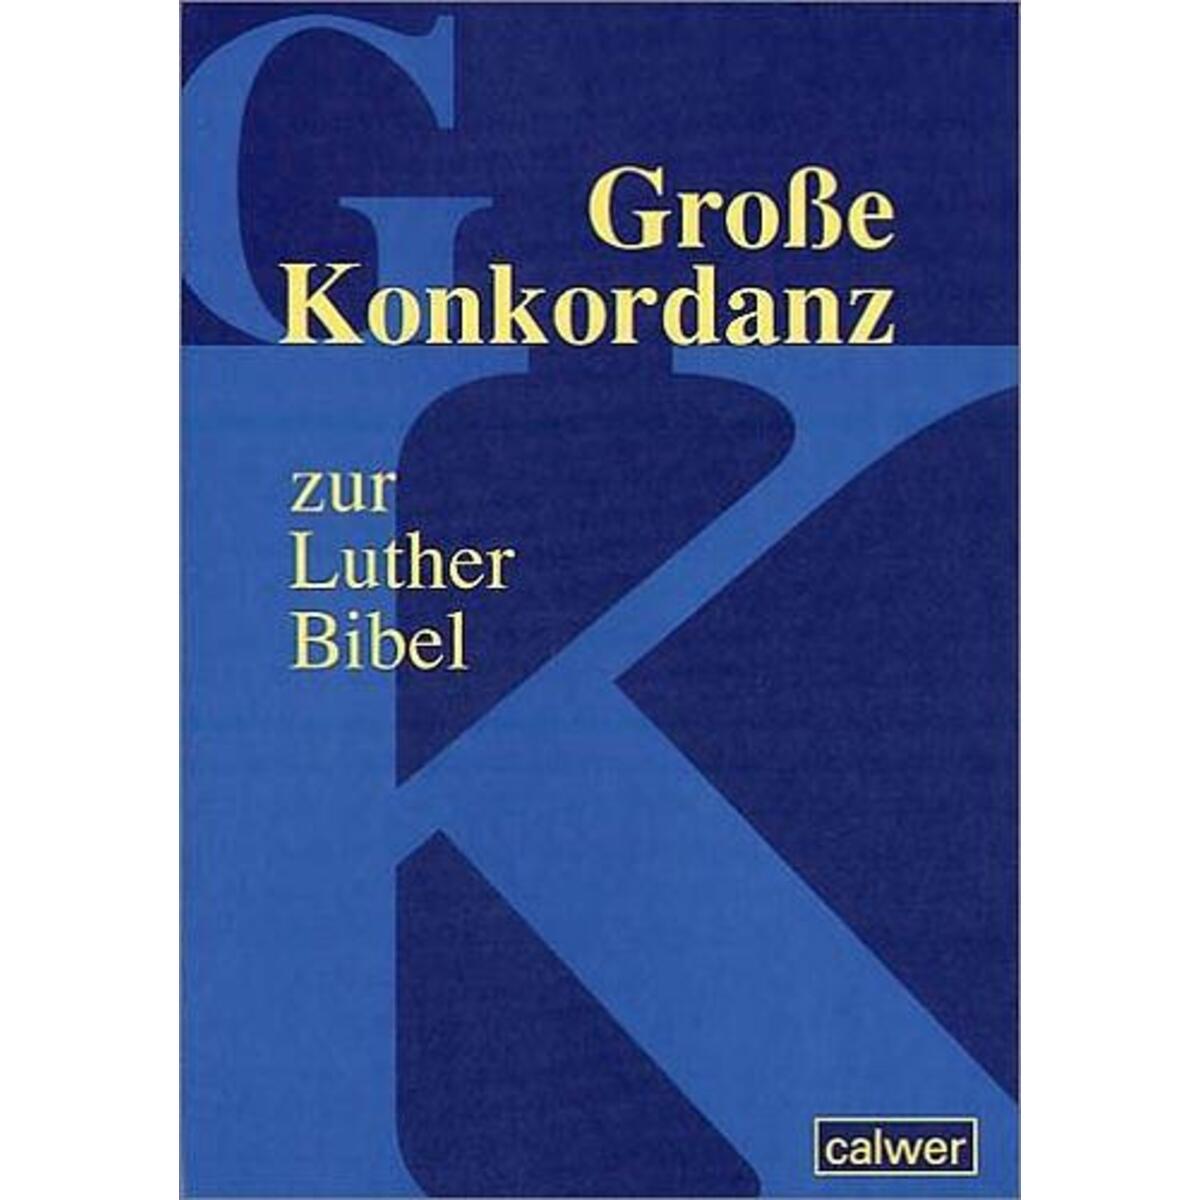 Große Konkordanz zur Lutherbibel von Calwer Verlag GmbH